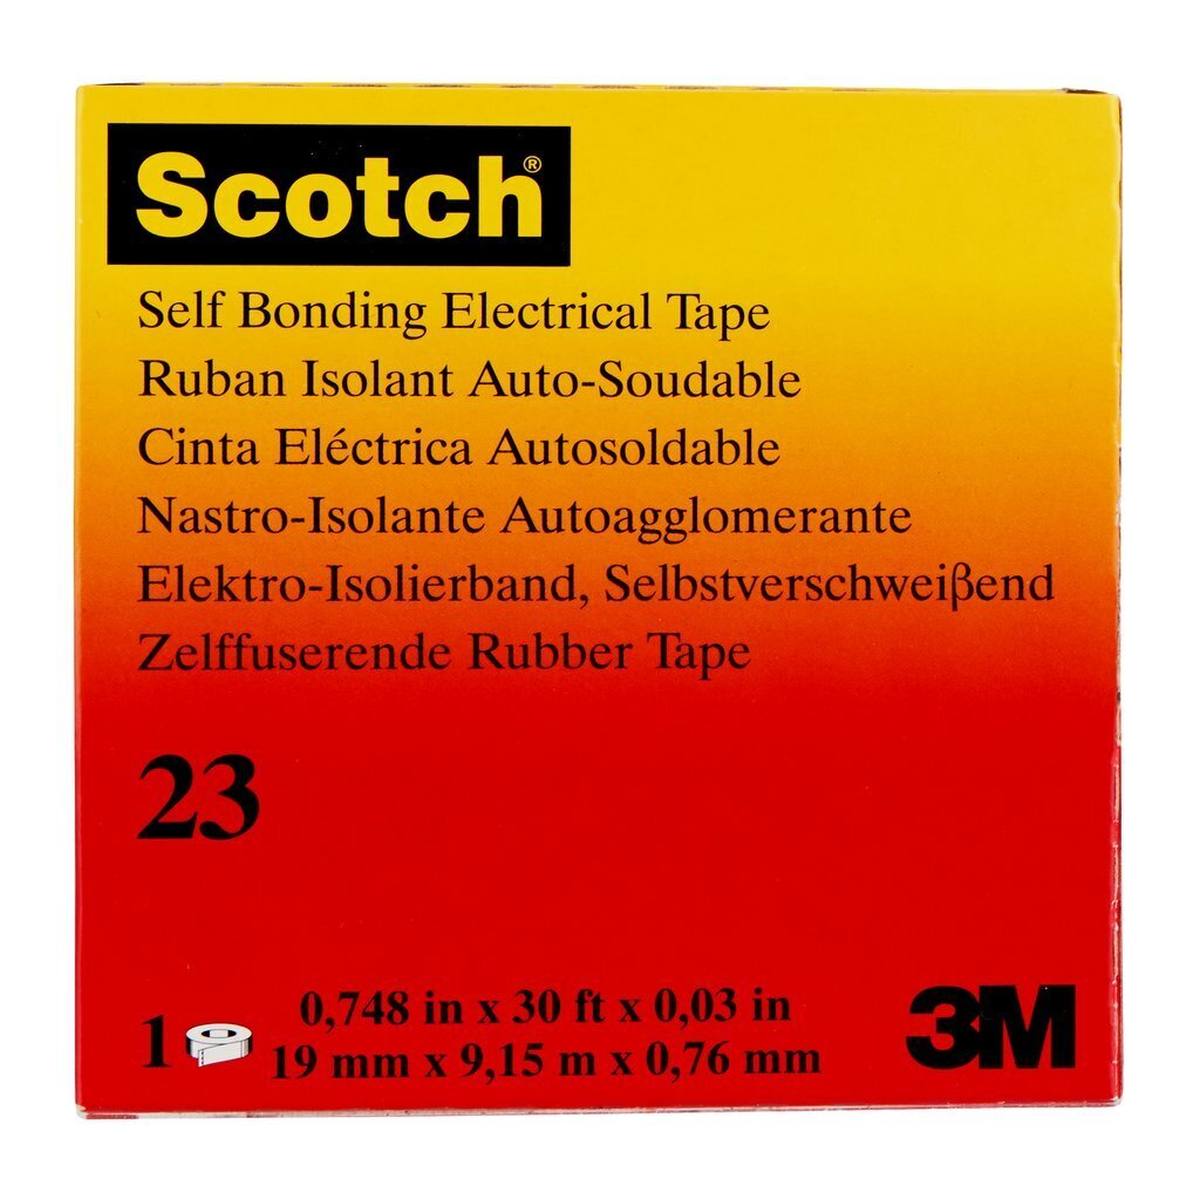 3M Scotch 23 Zelfdichtende ethyleenpropyleen rubbertape, 19 mm x 9,15